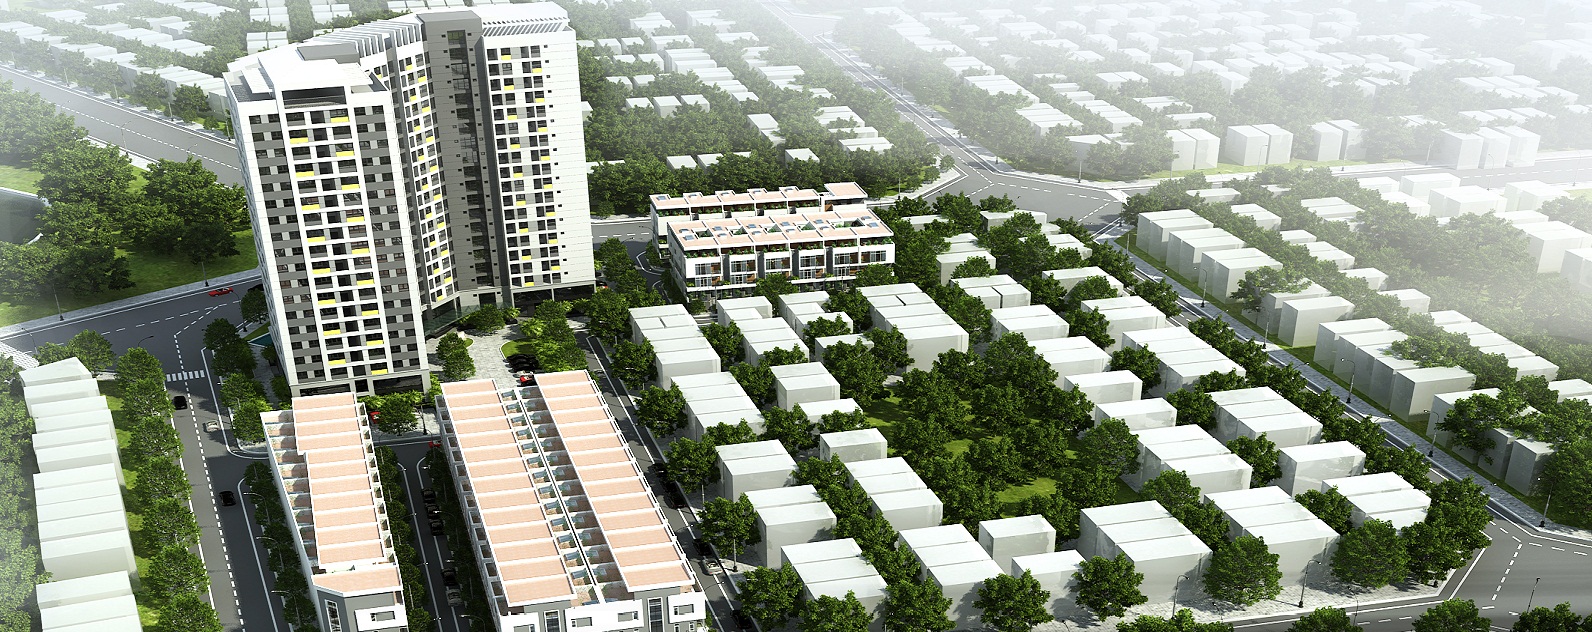 Hồ sơ thủ tục thành lập công ty tại khu đô thị Đại Kim, Nguyễn Xiển 